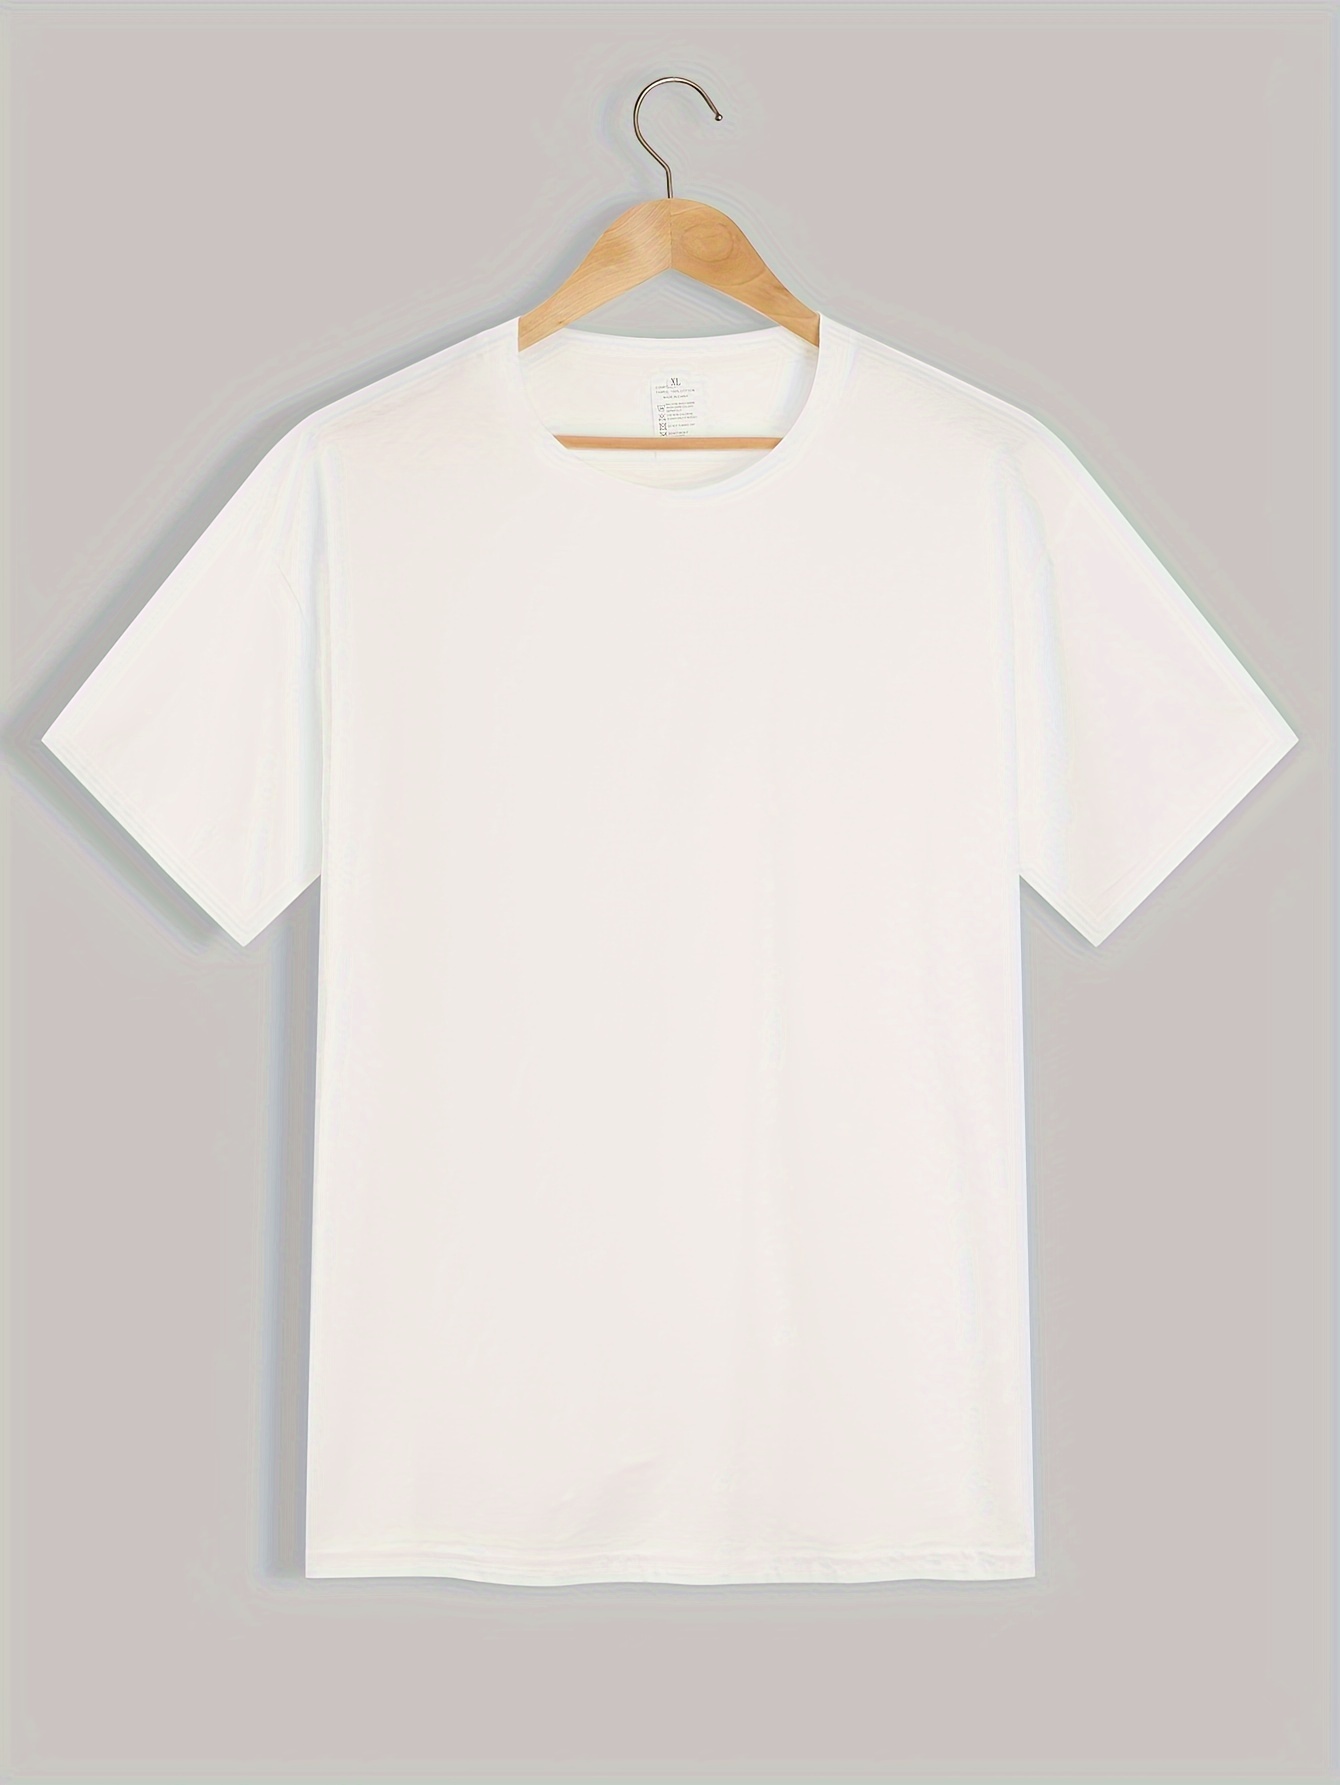 Camiseta básica de manga 3/4 con cuello redondo para mujer, estilo casual,  de algodón liso y delgado